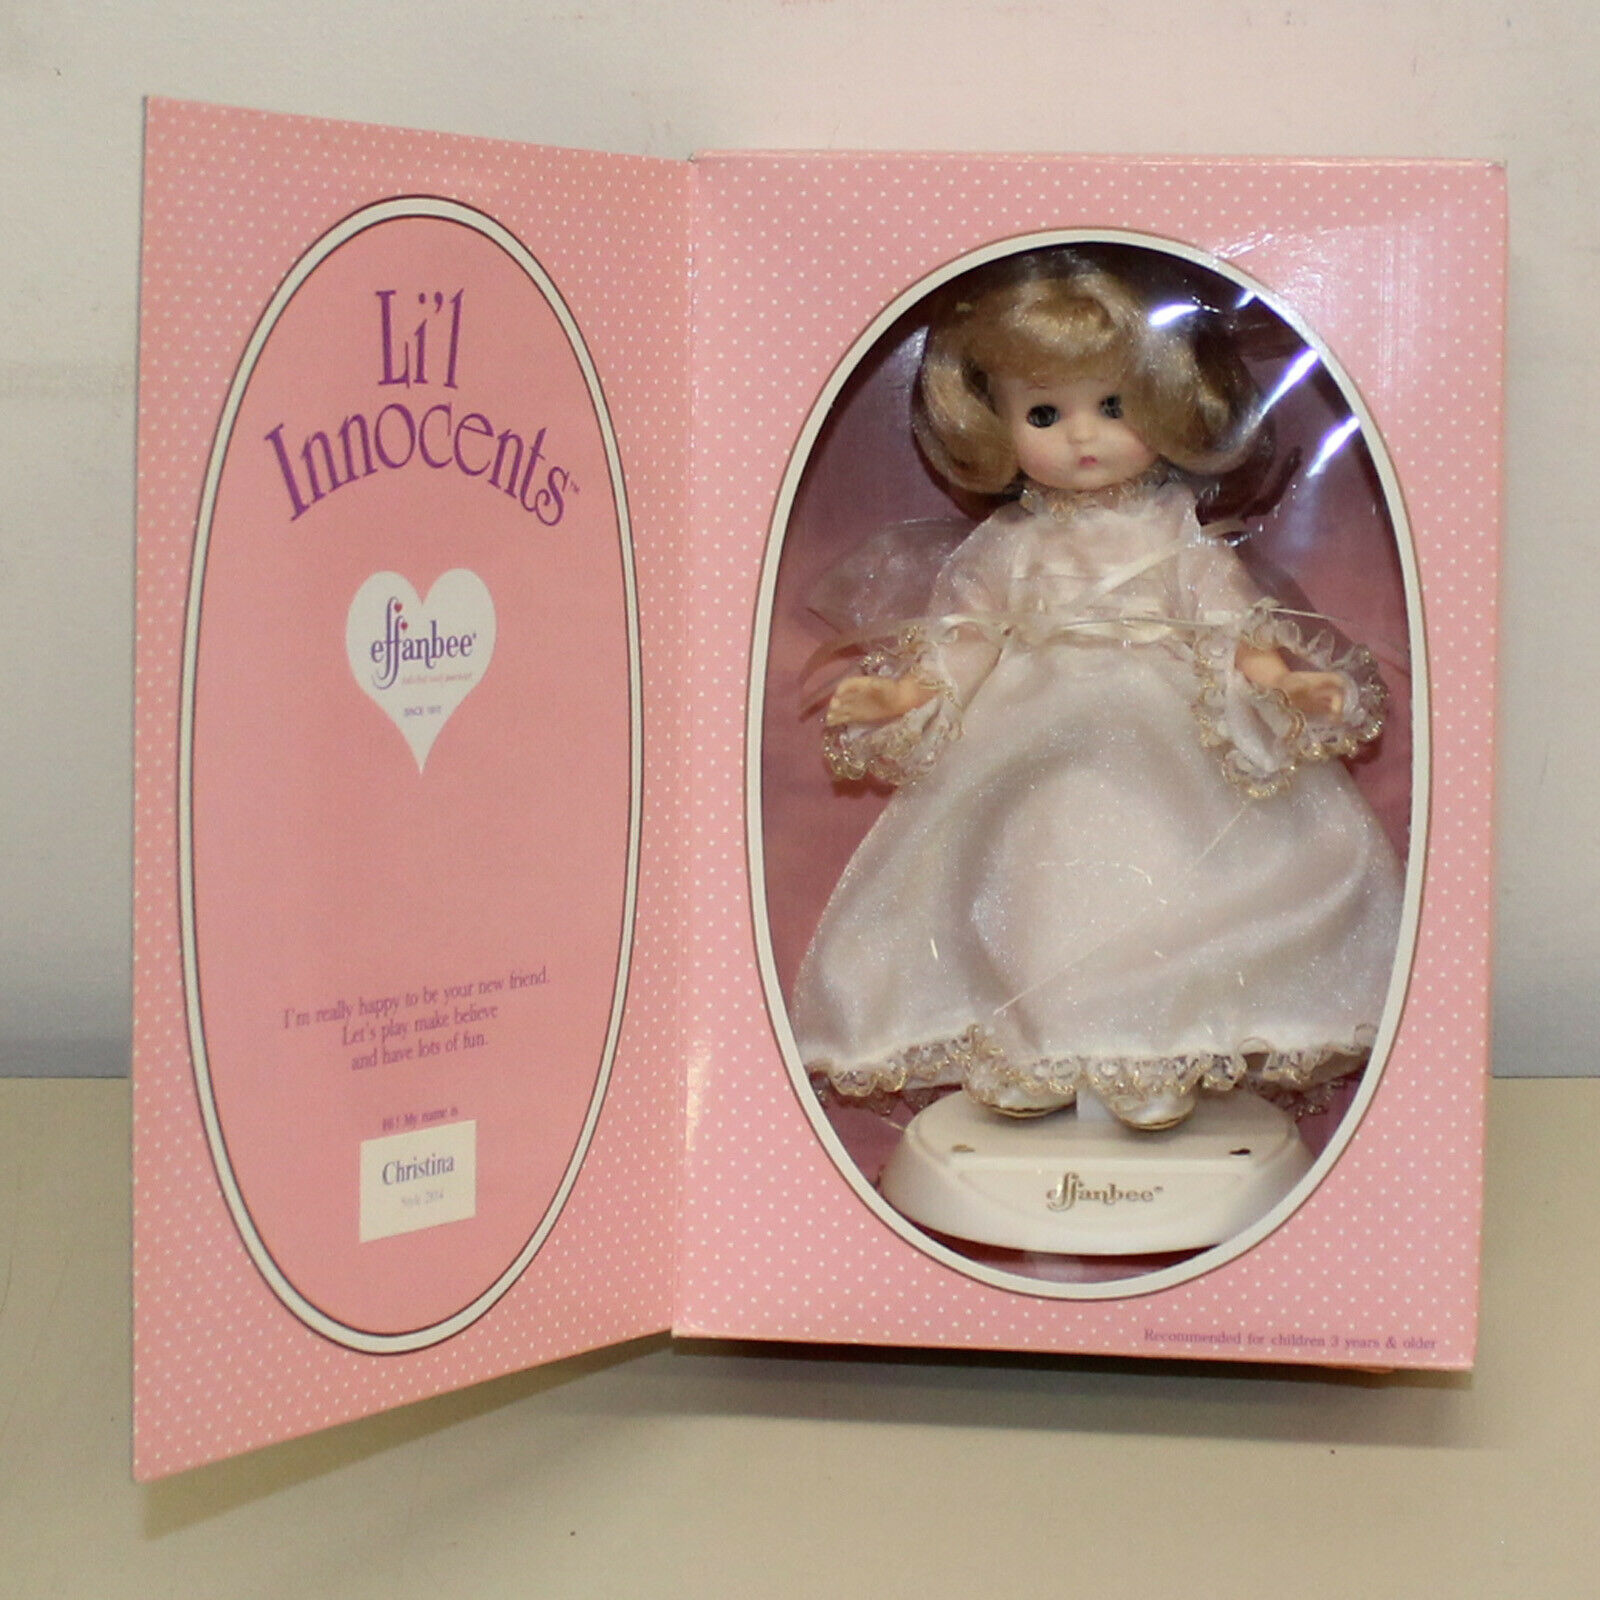 Effanbee Li'l Innocents Christina #2814 9" Vinyl Doll W/ Box